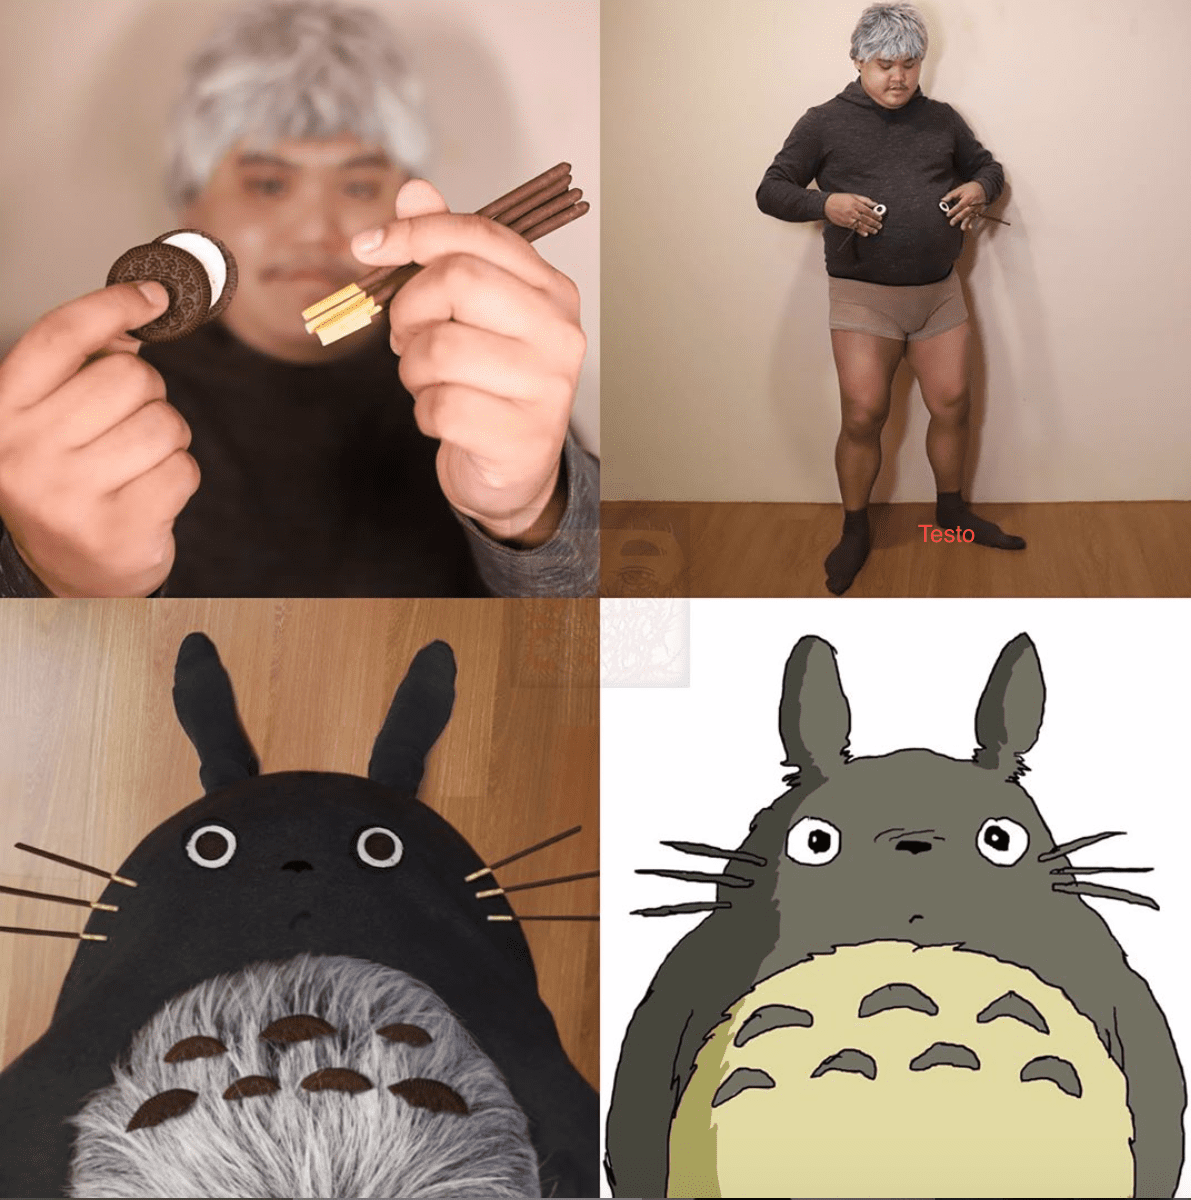 Un fan dello Studio Ghibli diventa virale per il cosplay di Totoro fai da te